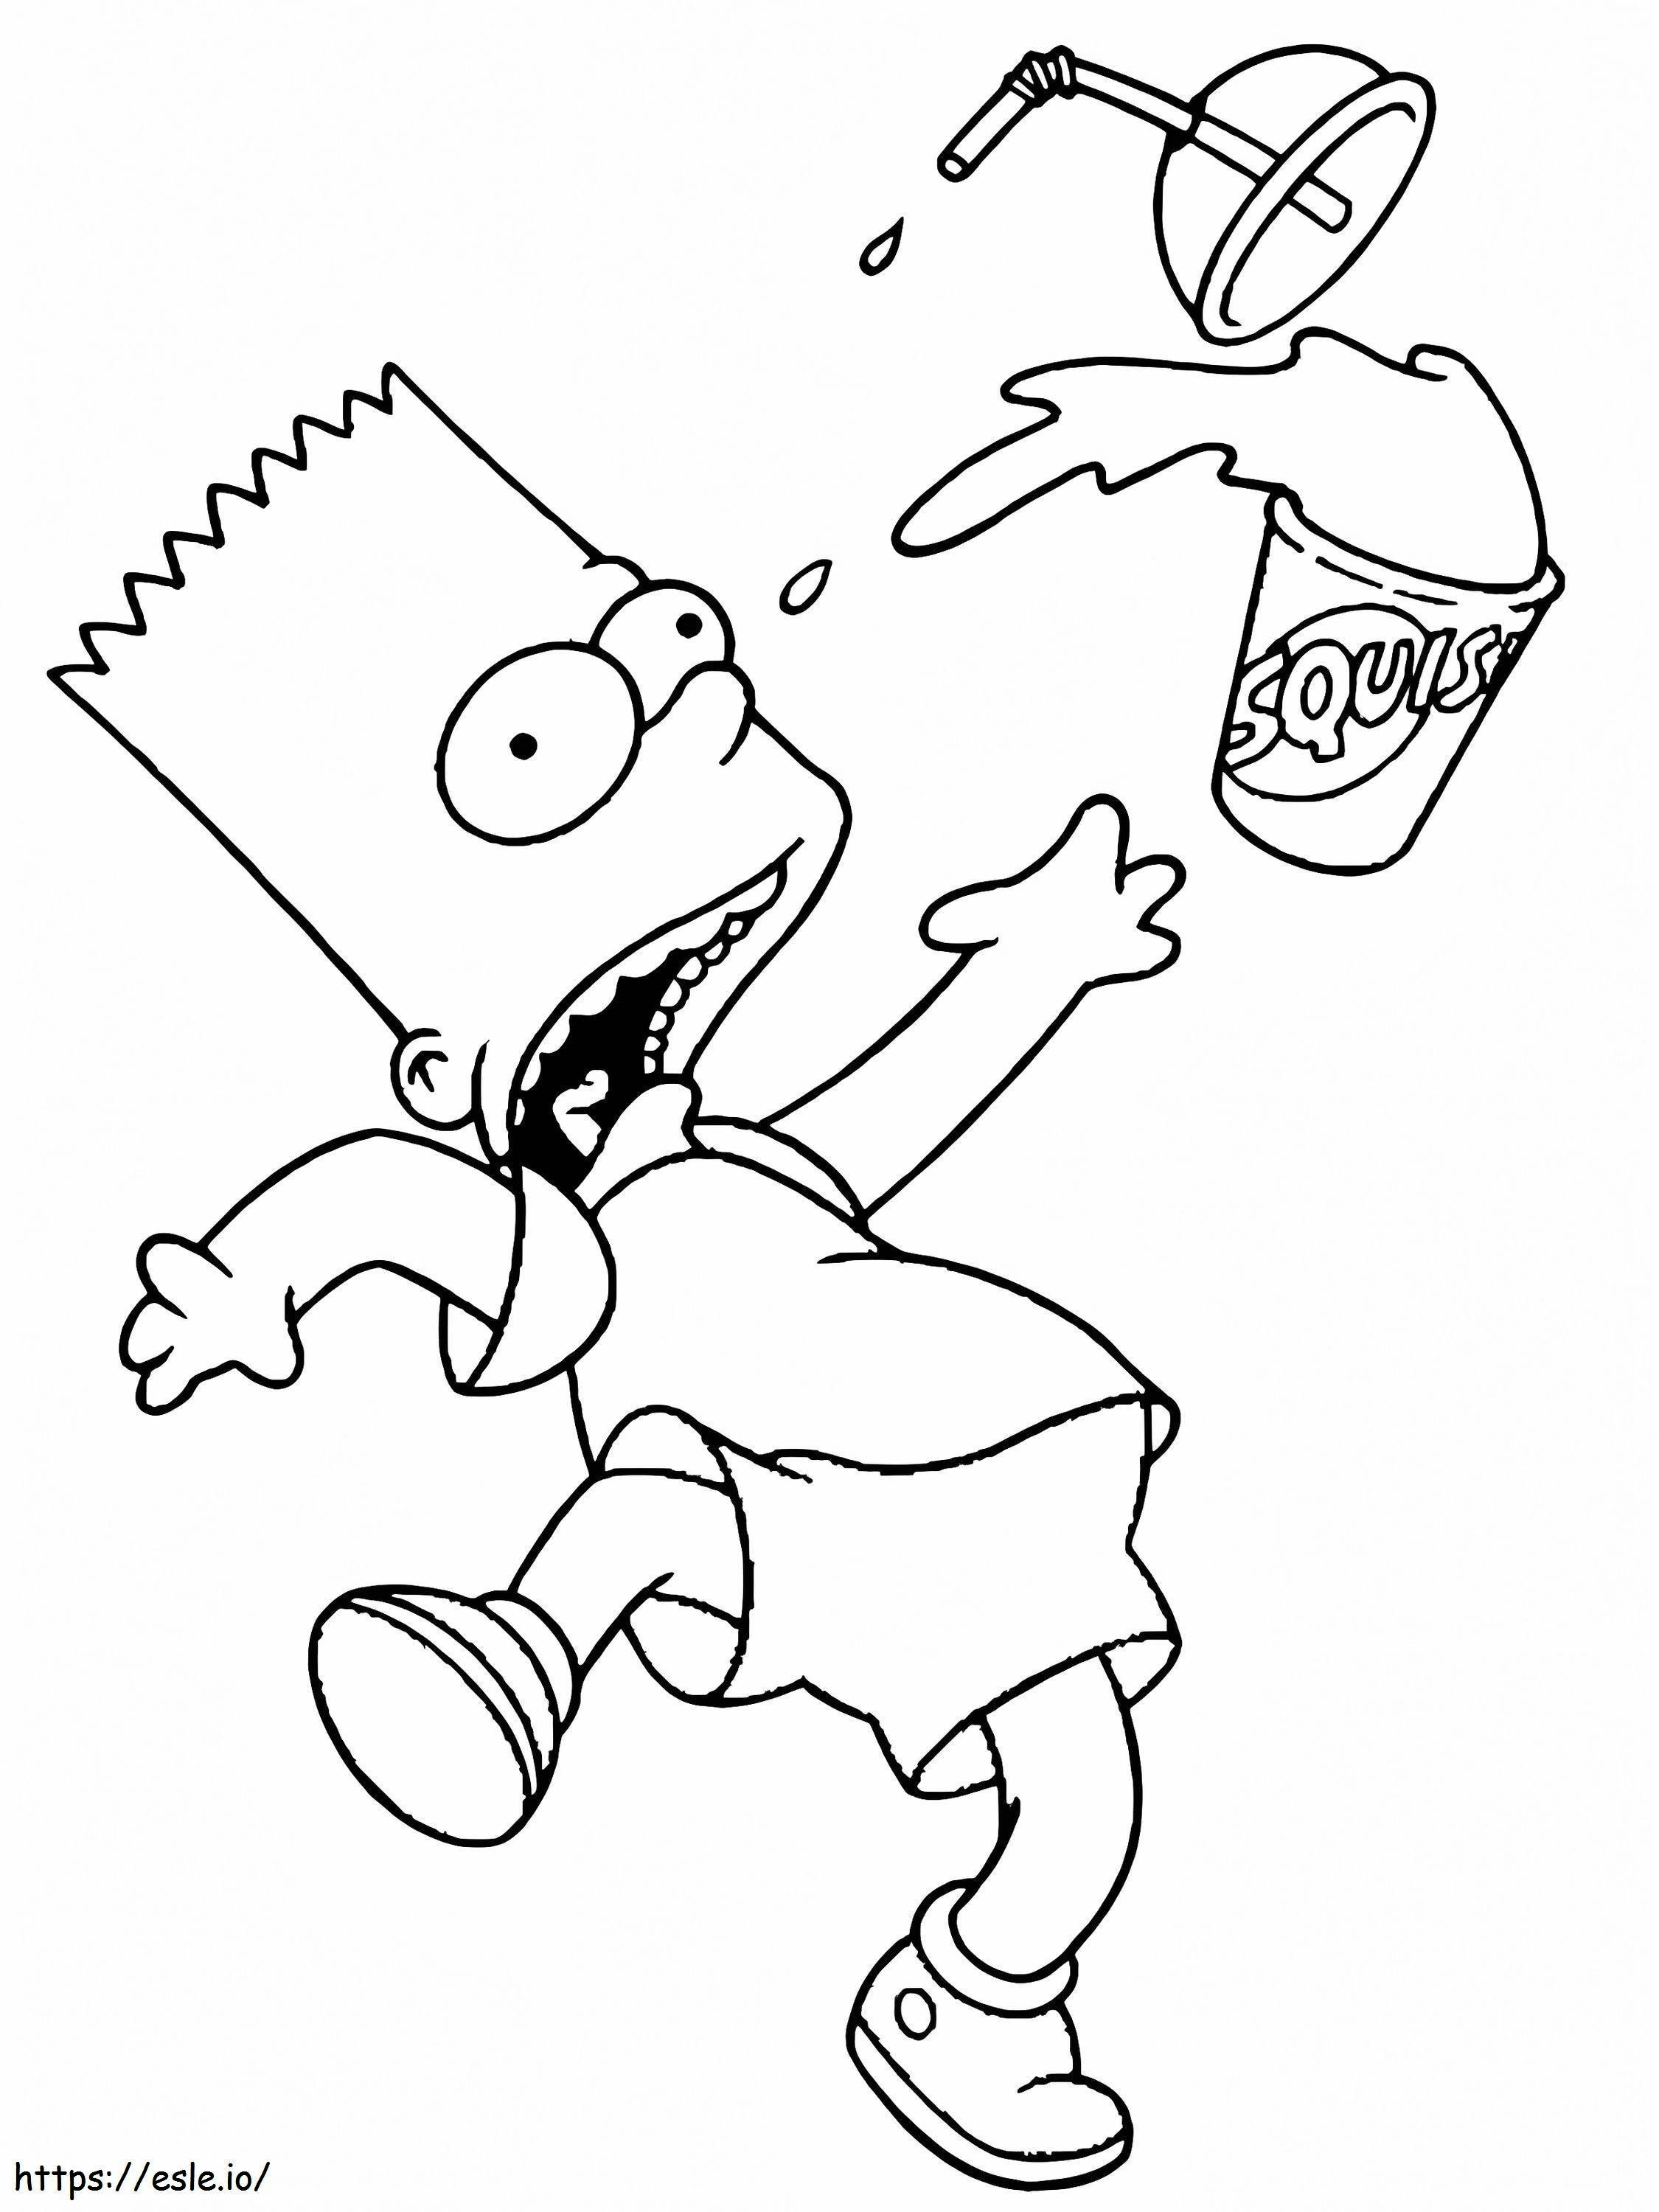 Paura di Bart Simpson da colorare